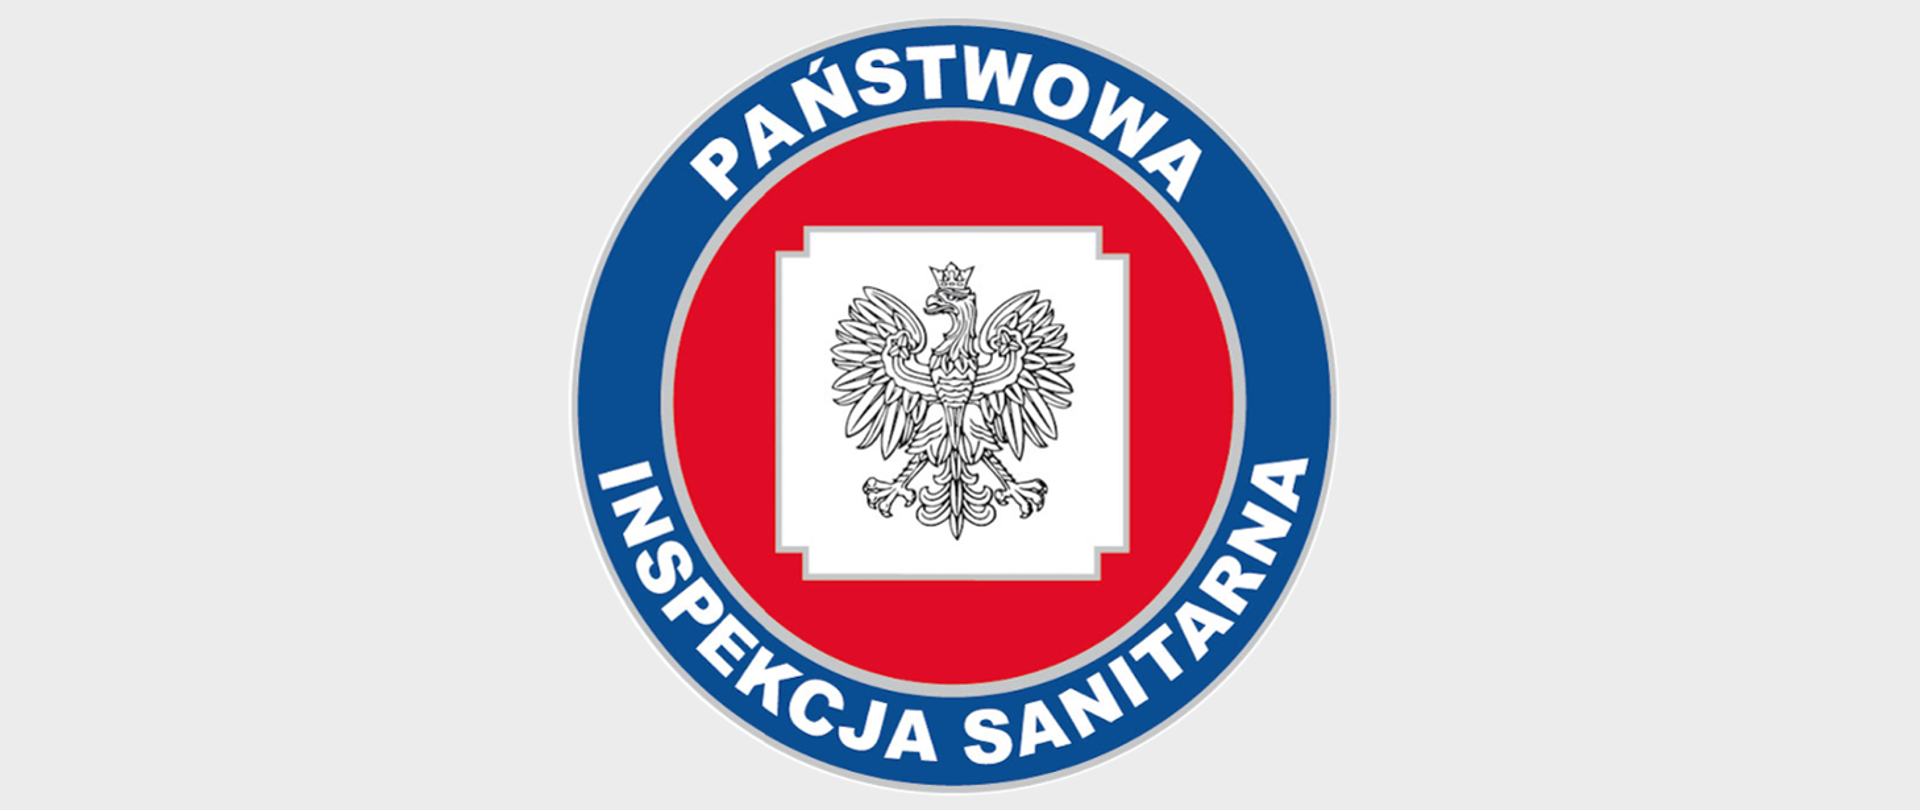 Okrągłe logo Państwowej Inspekcji Sanitarnej z białym napisem na granatowym tle wokół obrzeża PAŃSTWOWA INSPEKCJA SANITARNA, a w centrum koła czerwone tło i orzeł jak w Godle Polski na białym tle kwadratu z wyciętymi narożnikami.